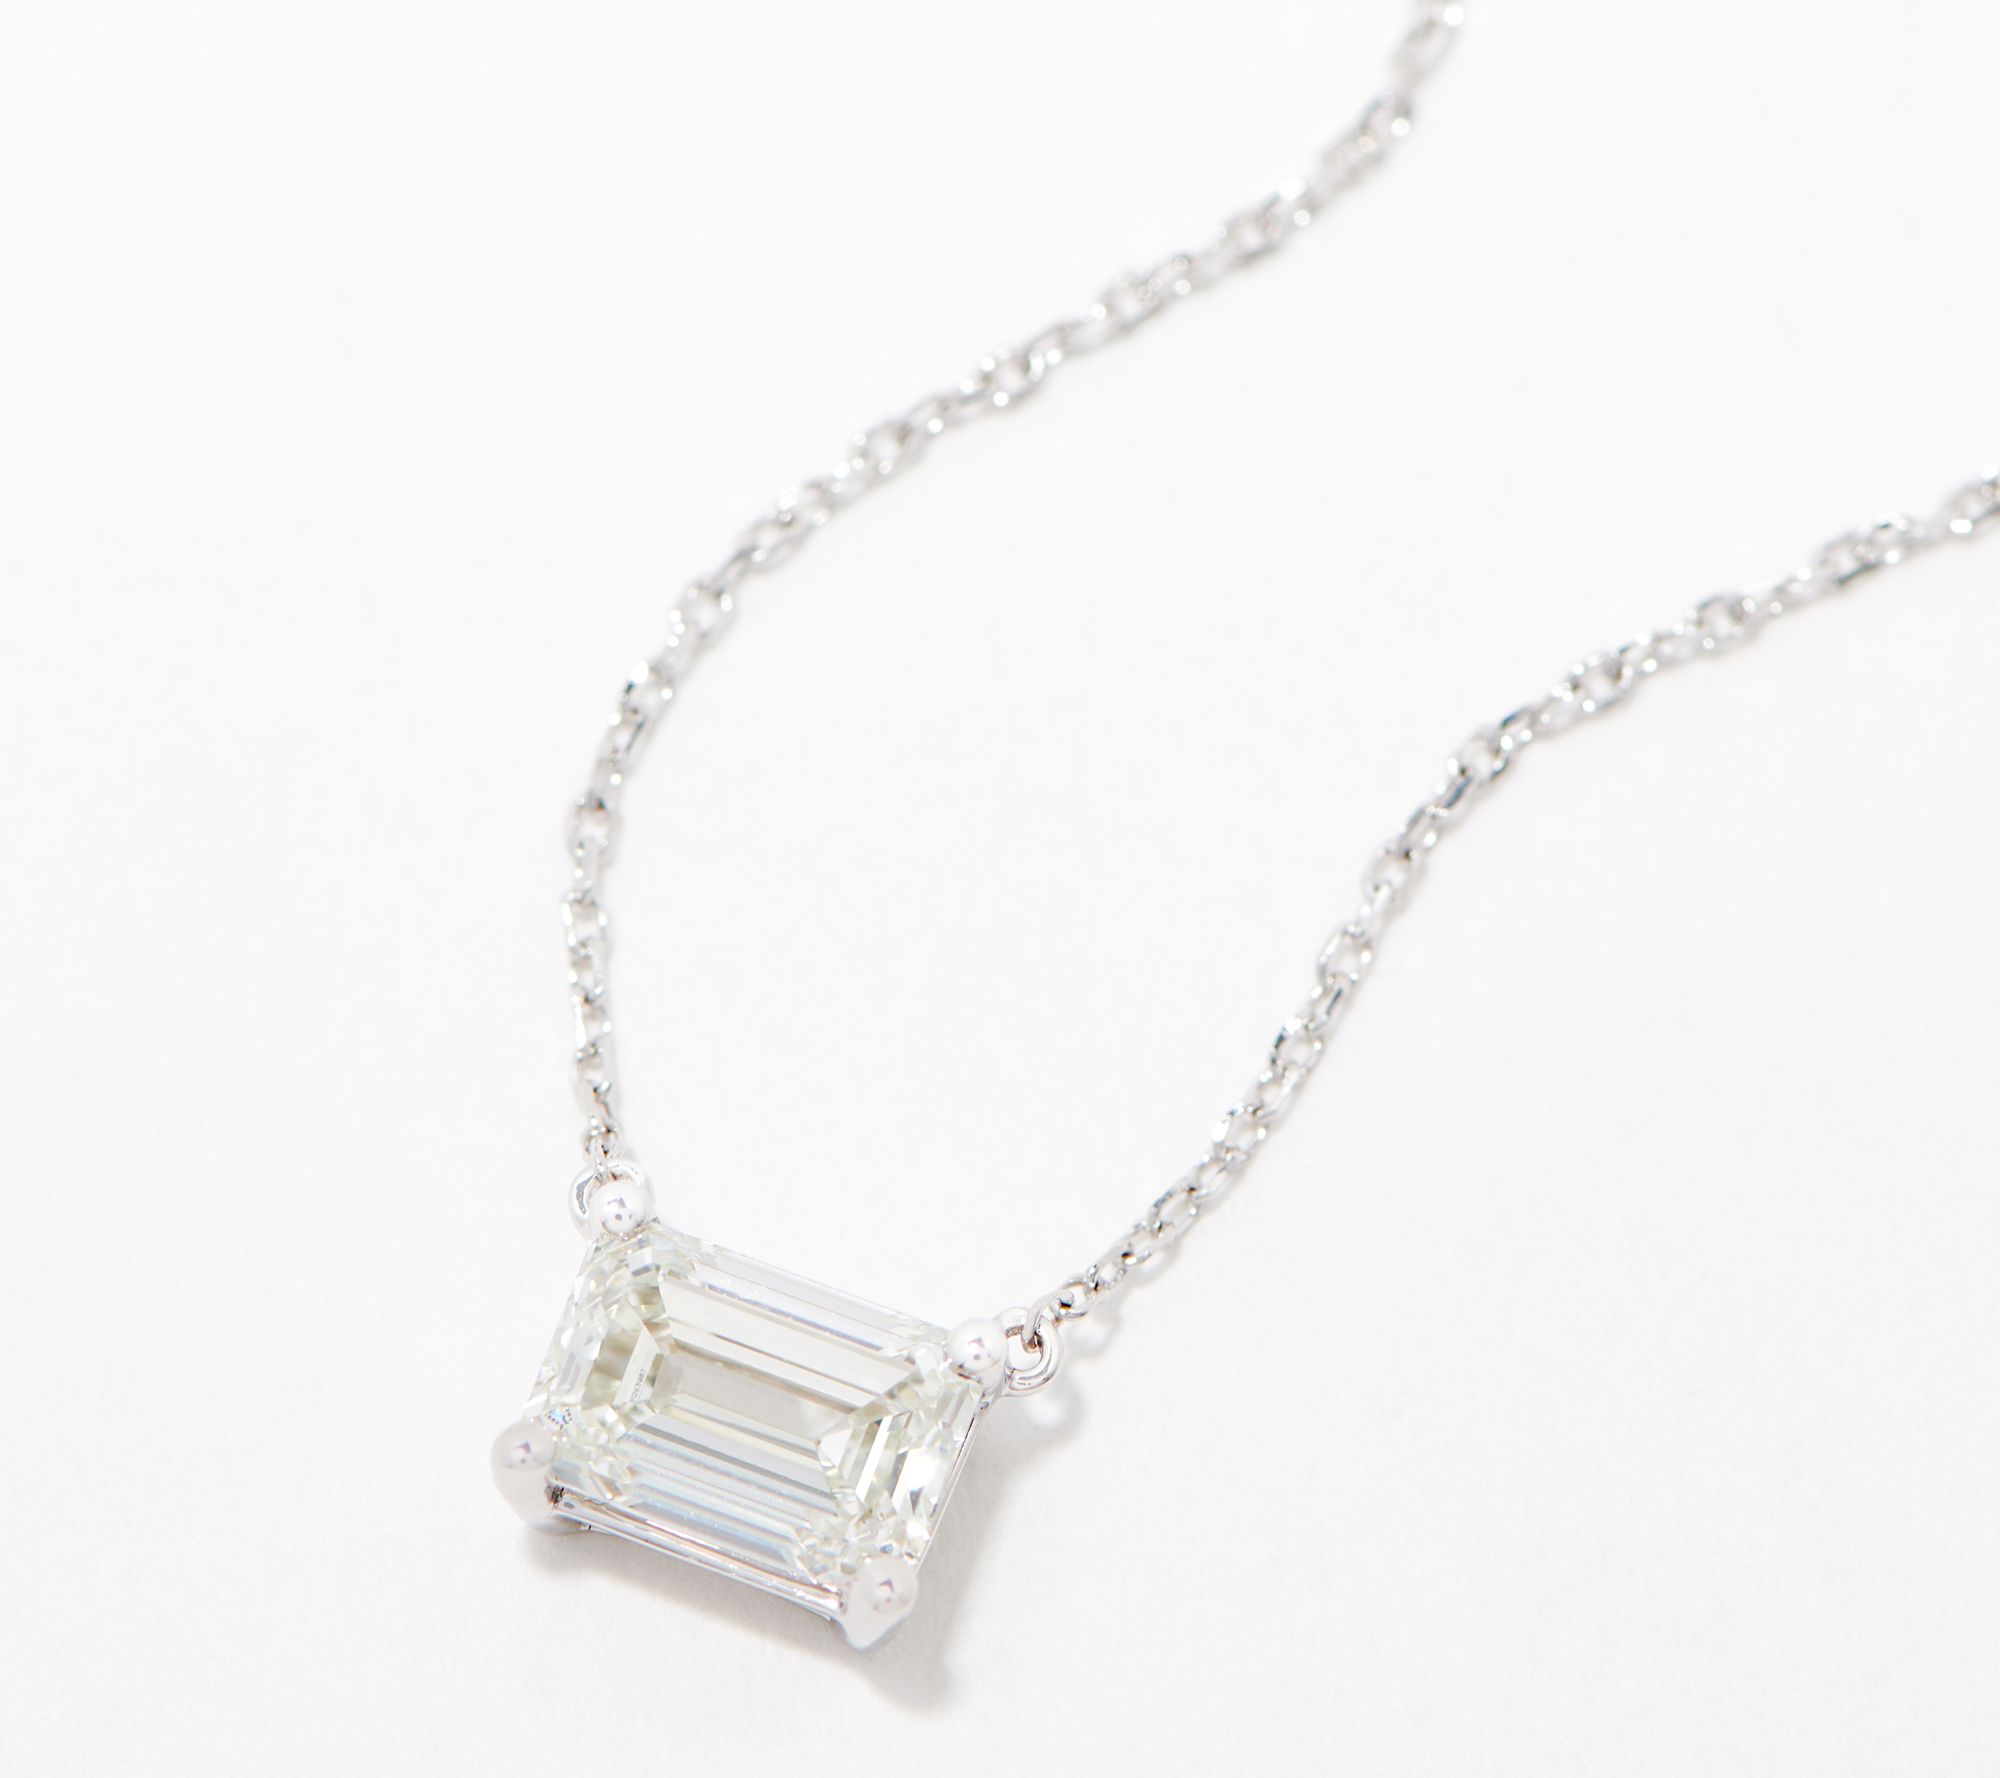 Fire Light Lab Grown 1.5ct Solitaire Diamond Necklace, 14K - QVC.com